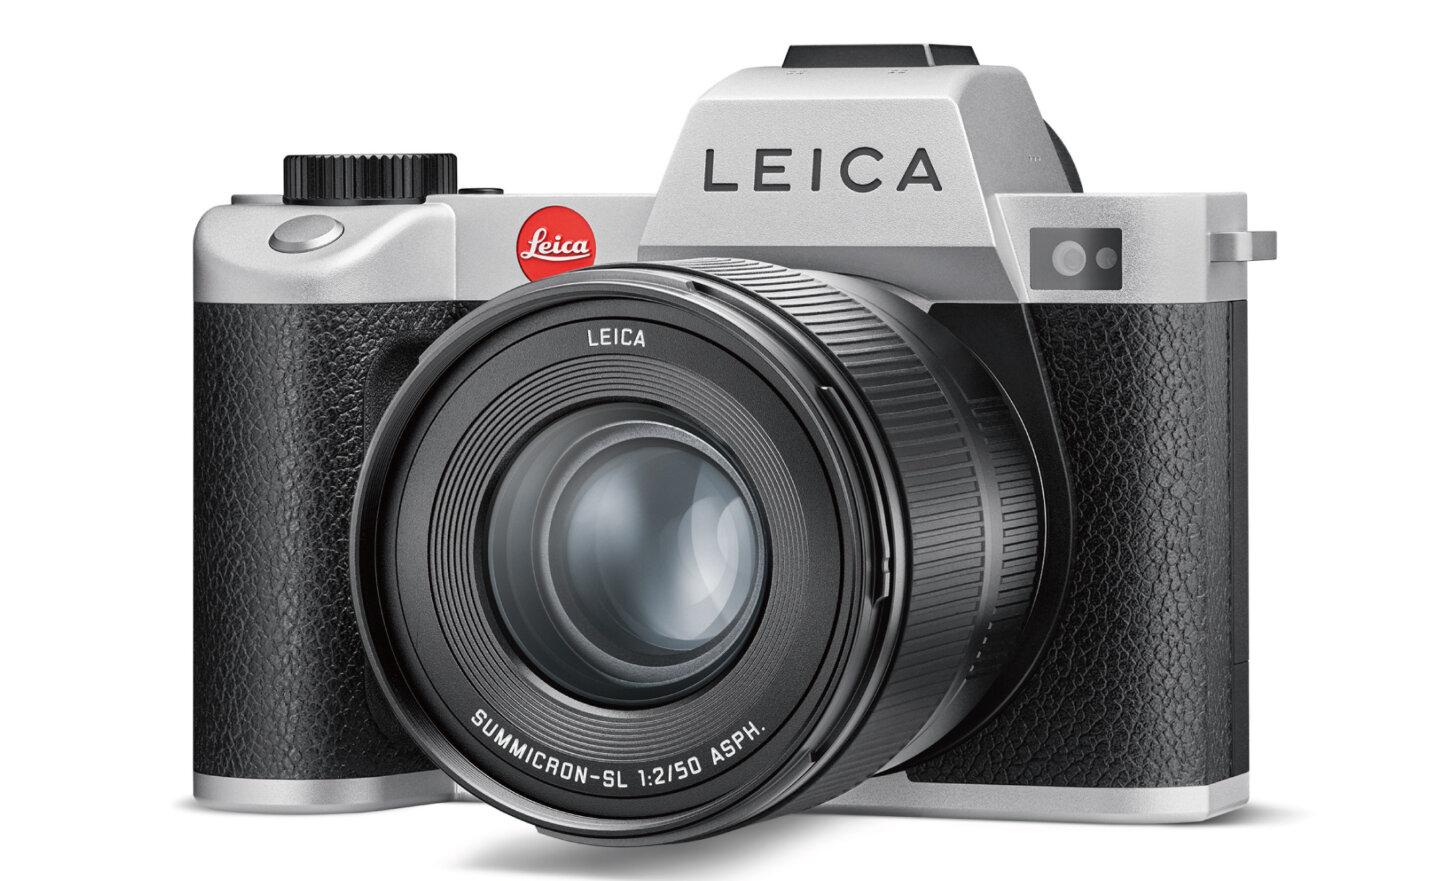 錢錢將變成更好的相機了！徠卡 SL2 銀色版相機四款套組上市